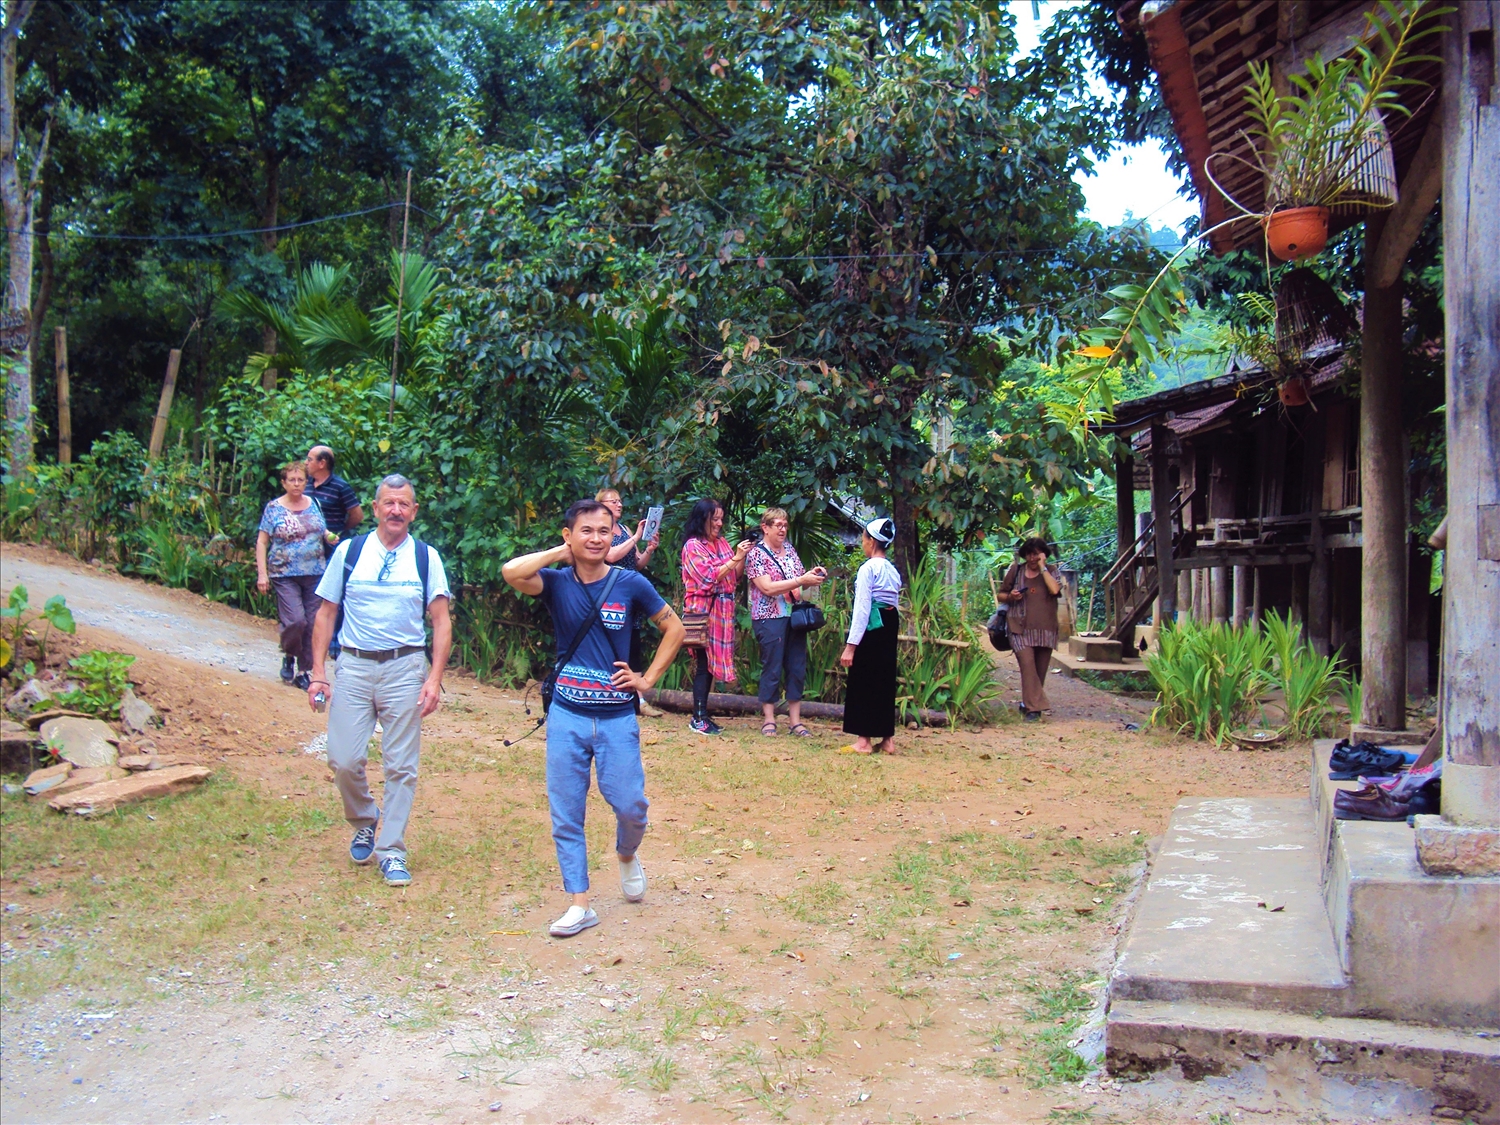 Guider người Việt đưa đoàn khách du lịch phương Tây trải nghiệm văn hóa một bản người Mường tại Hòa Bình (Ảnh chụp trước thời điểm xảy ra đại dịch Covid-19)